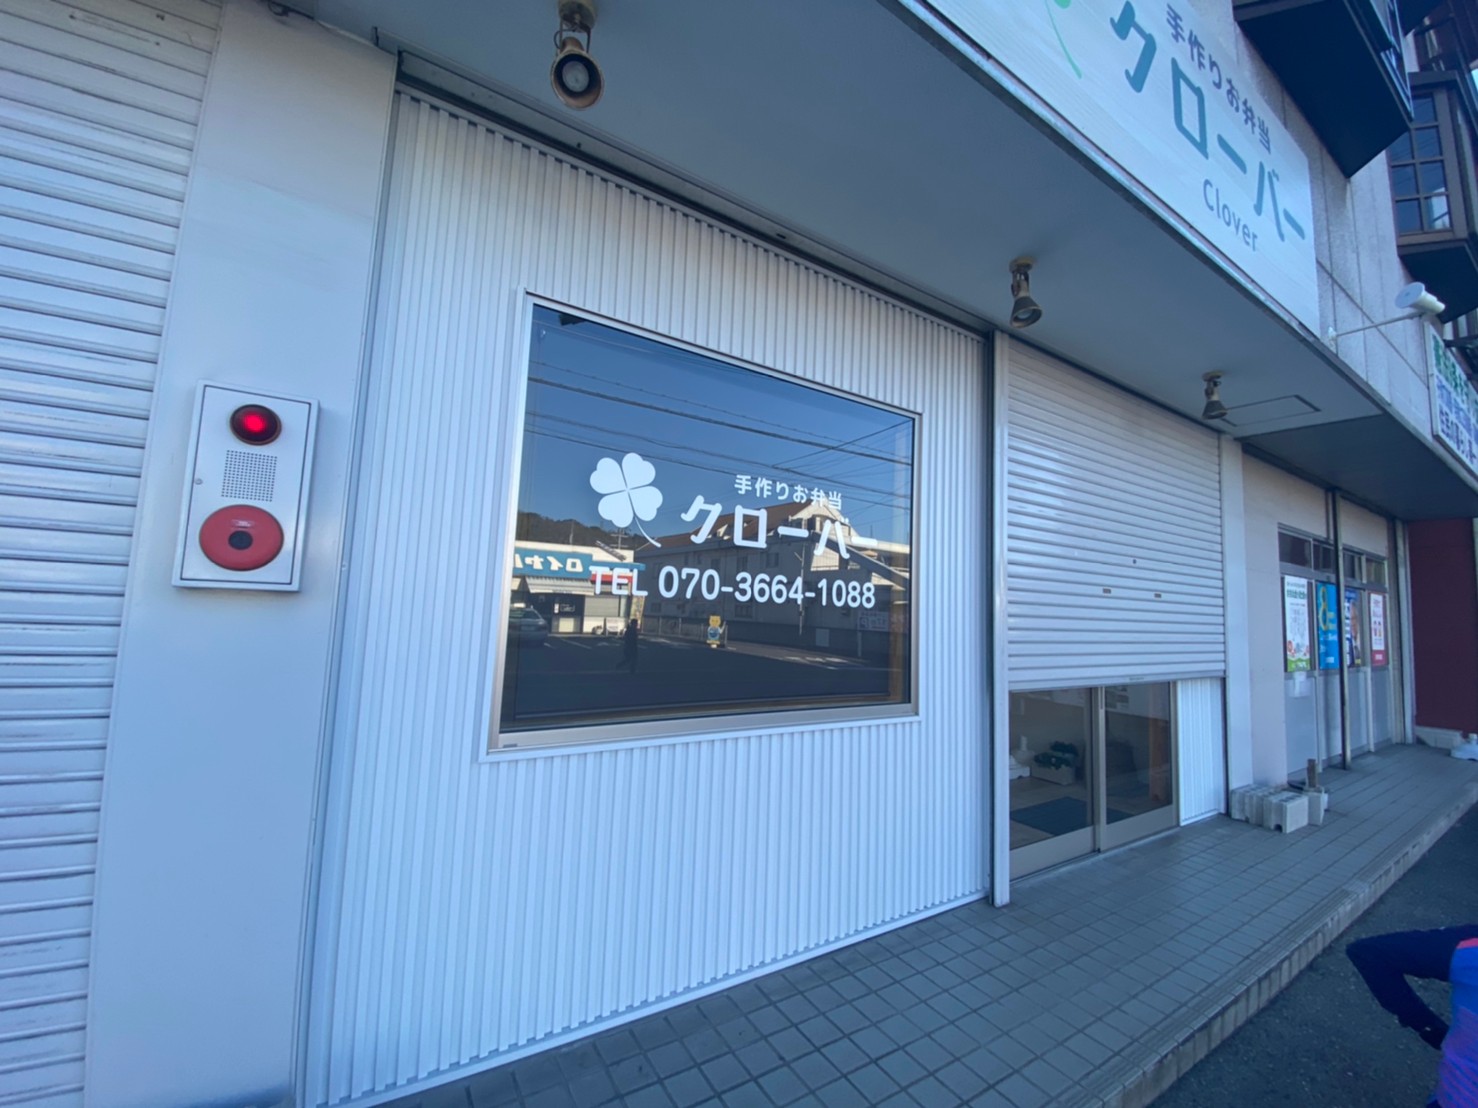 北平野に手作り弁当 クローバー がオープンしている 姫路市のローカル情報サイト 裏観光情報も